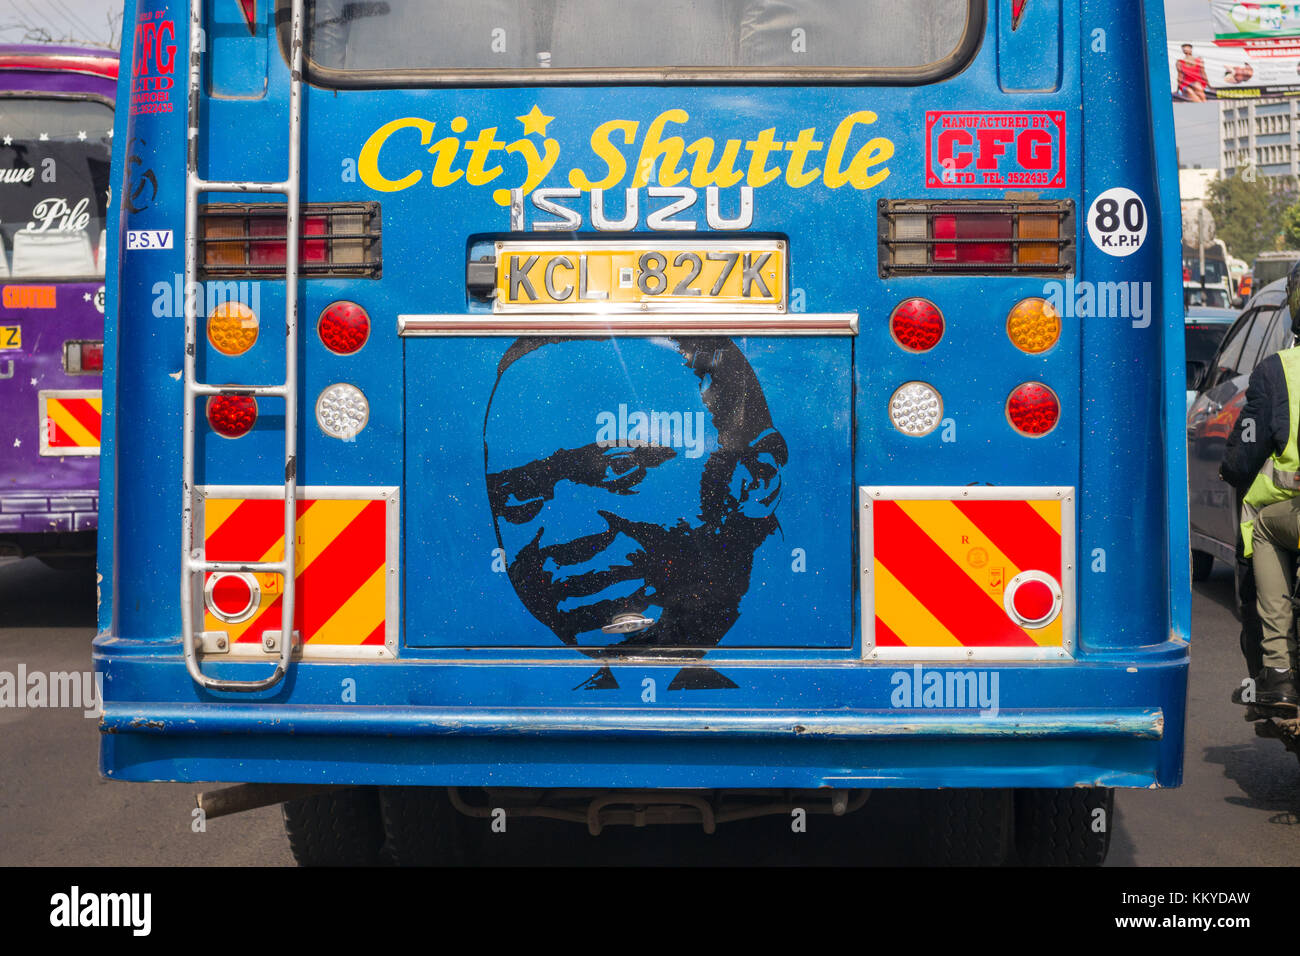 Une navette de bus de la ville avec une peinture du Président Uhuru Kenyatta sur l'arrière de l'autobus, Nairobi, Kenya Banque D'Images